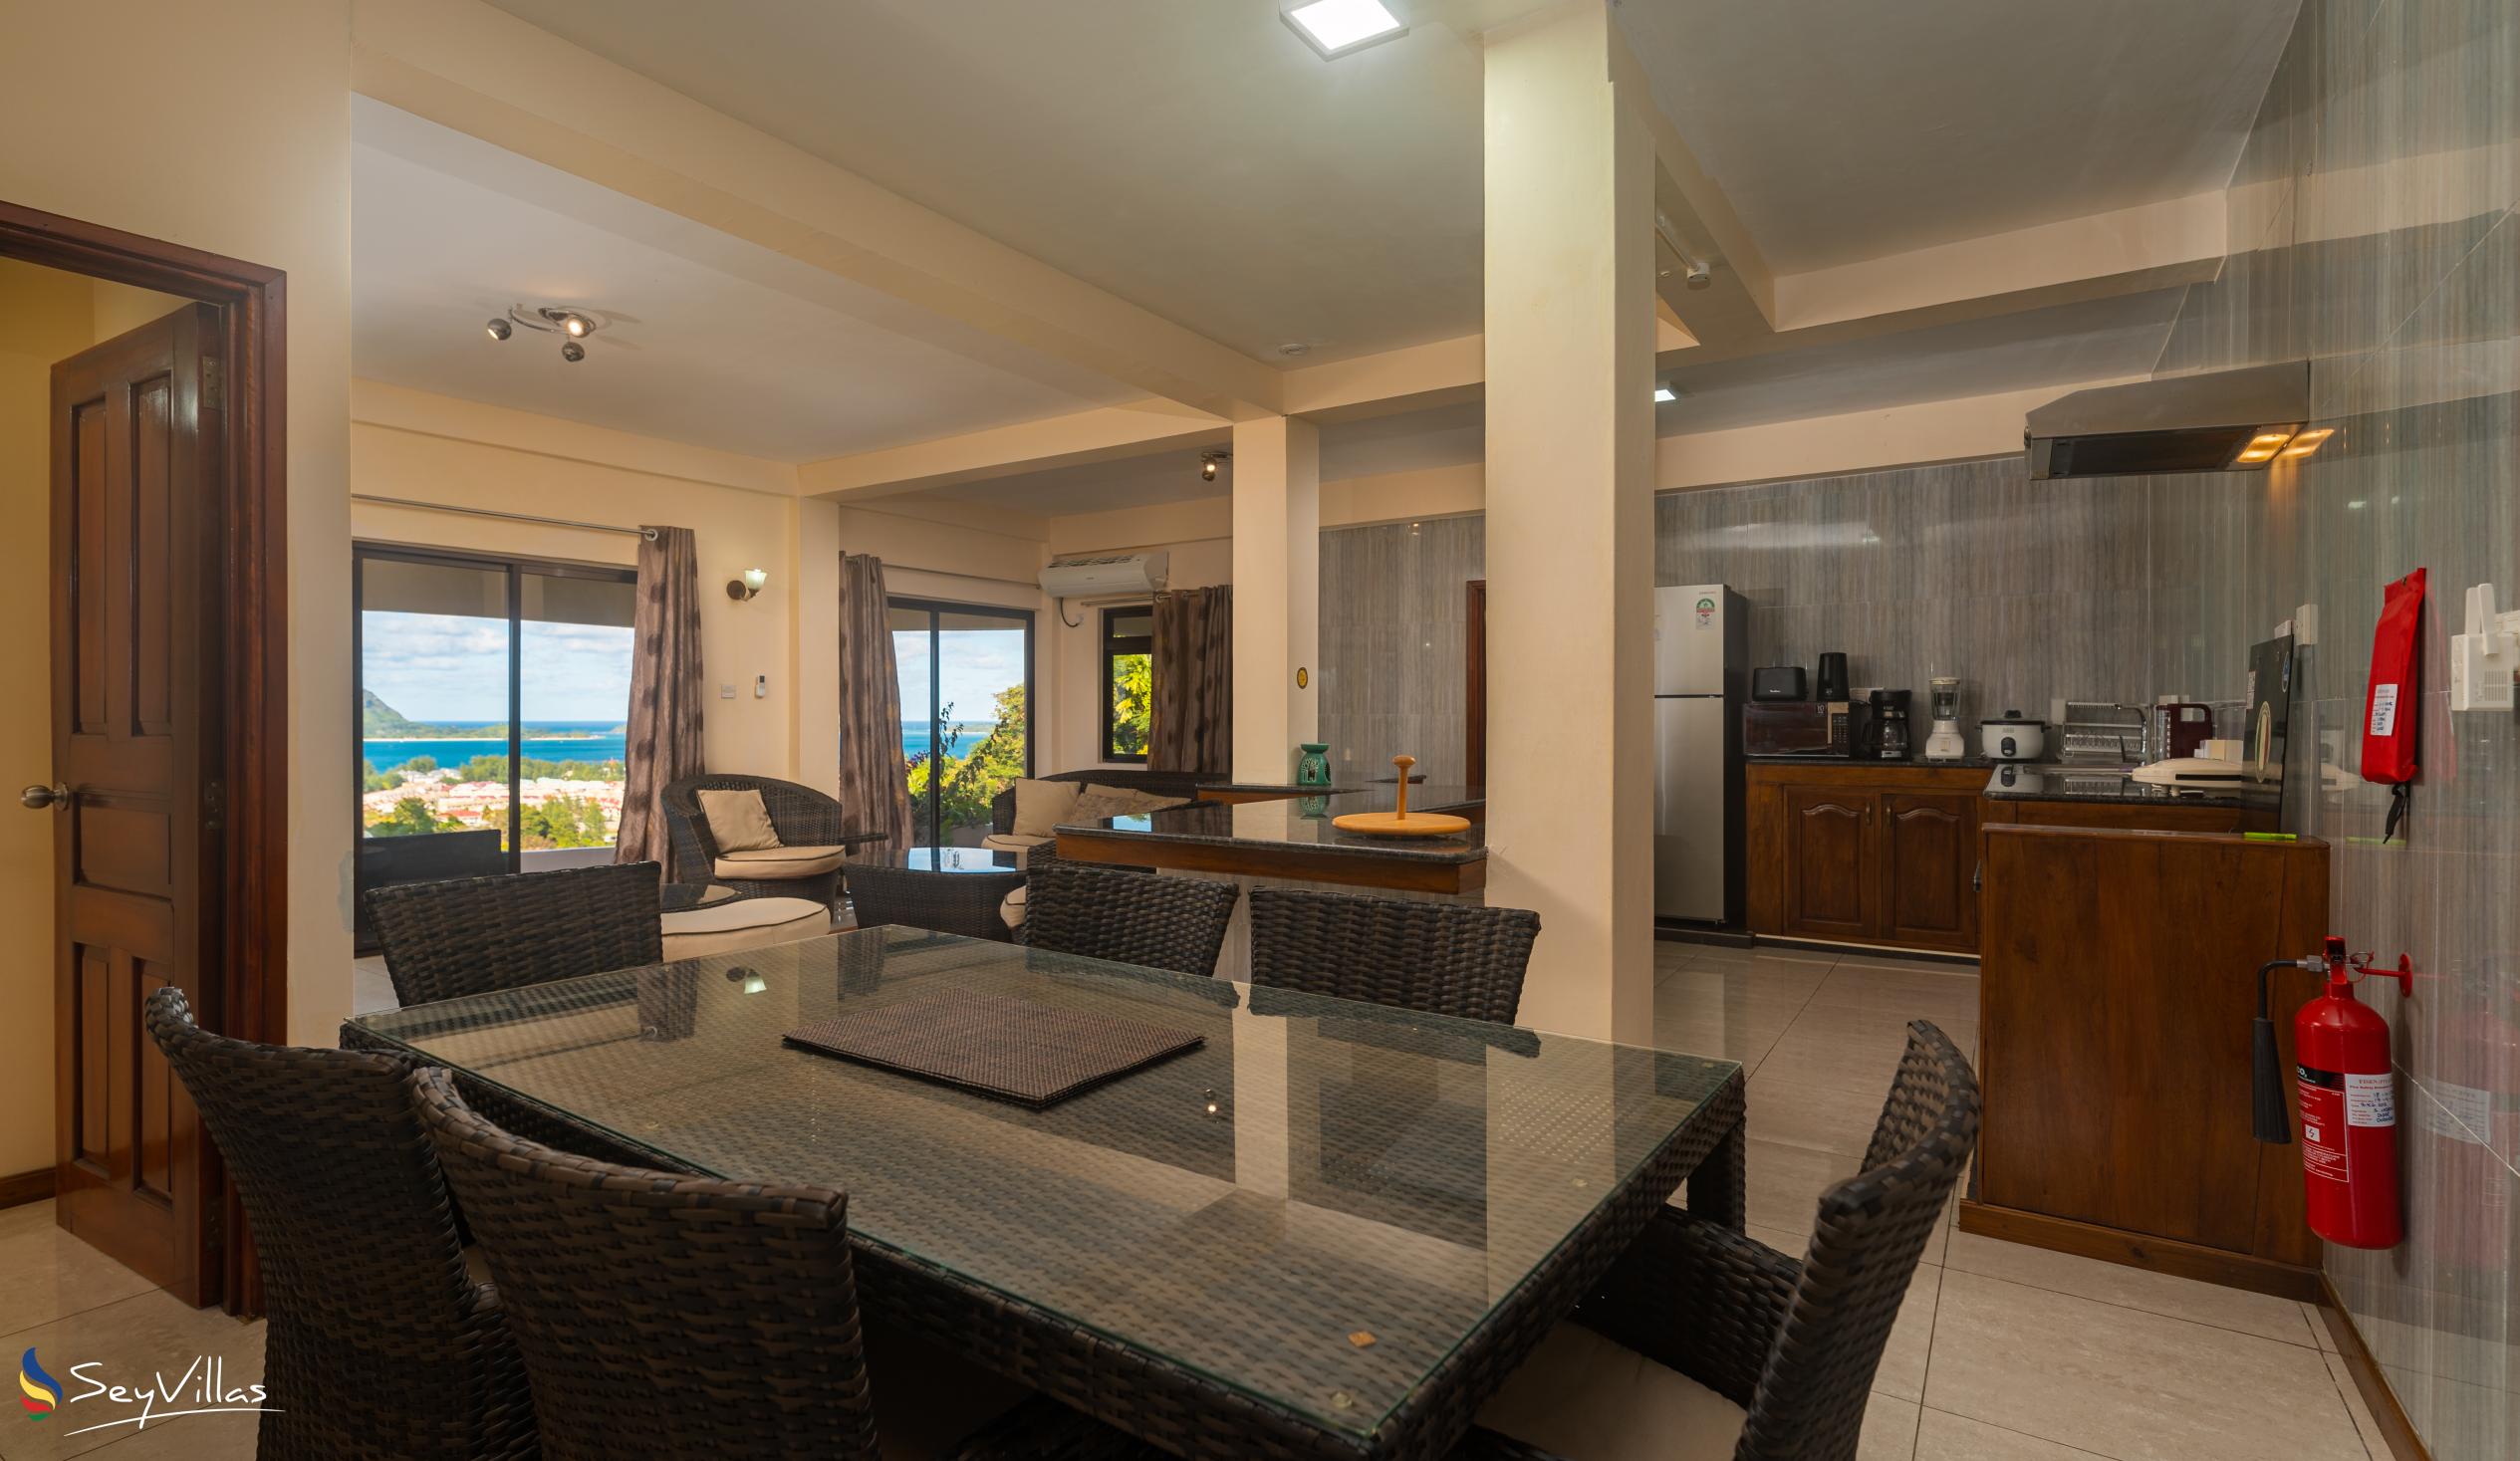 Foto 66: Maison L'Horizon - Appartement 2 chambres Vann Nor - Mahé (Seychelles)